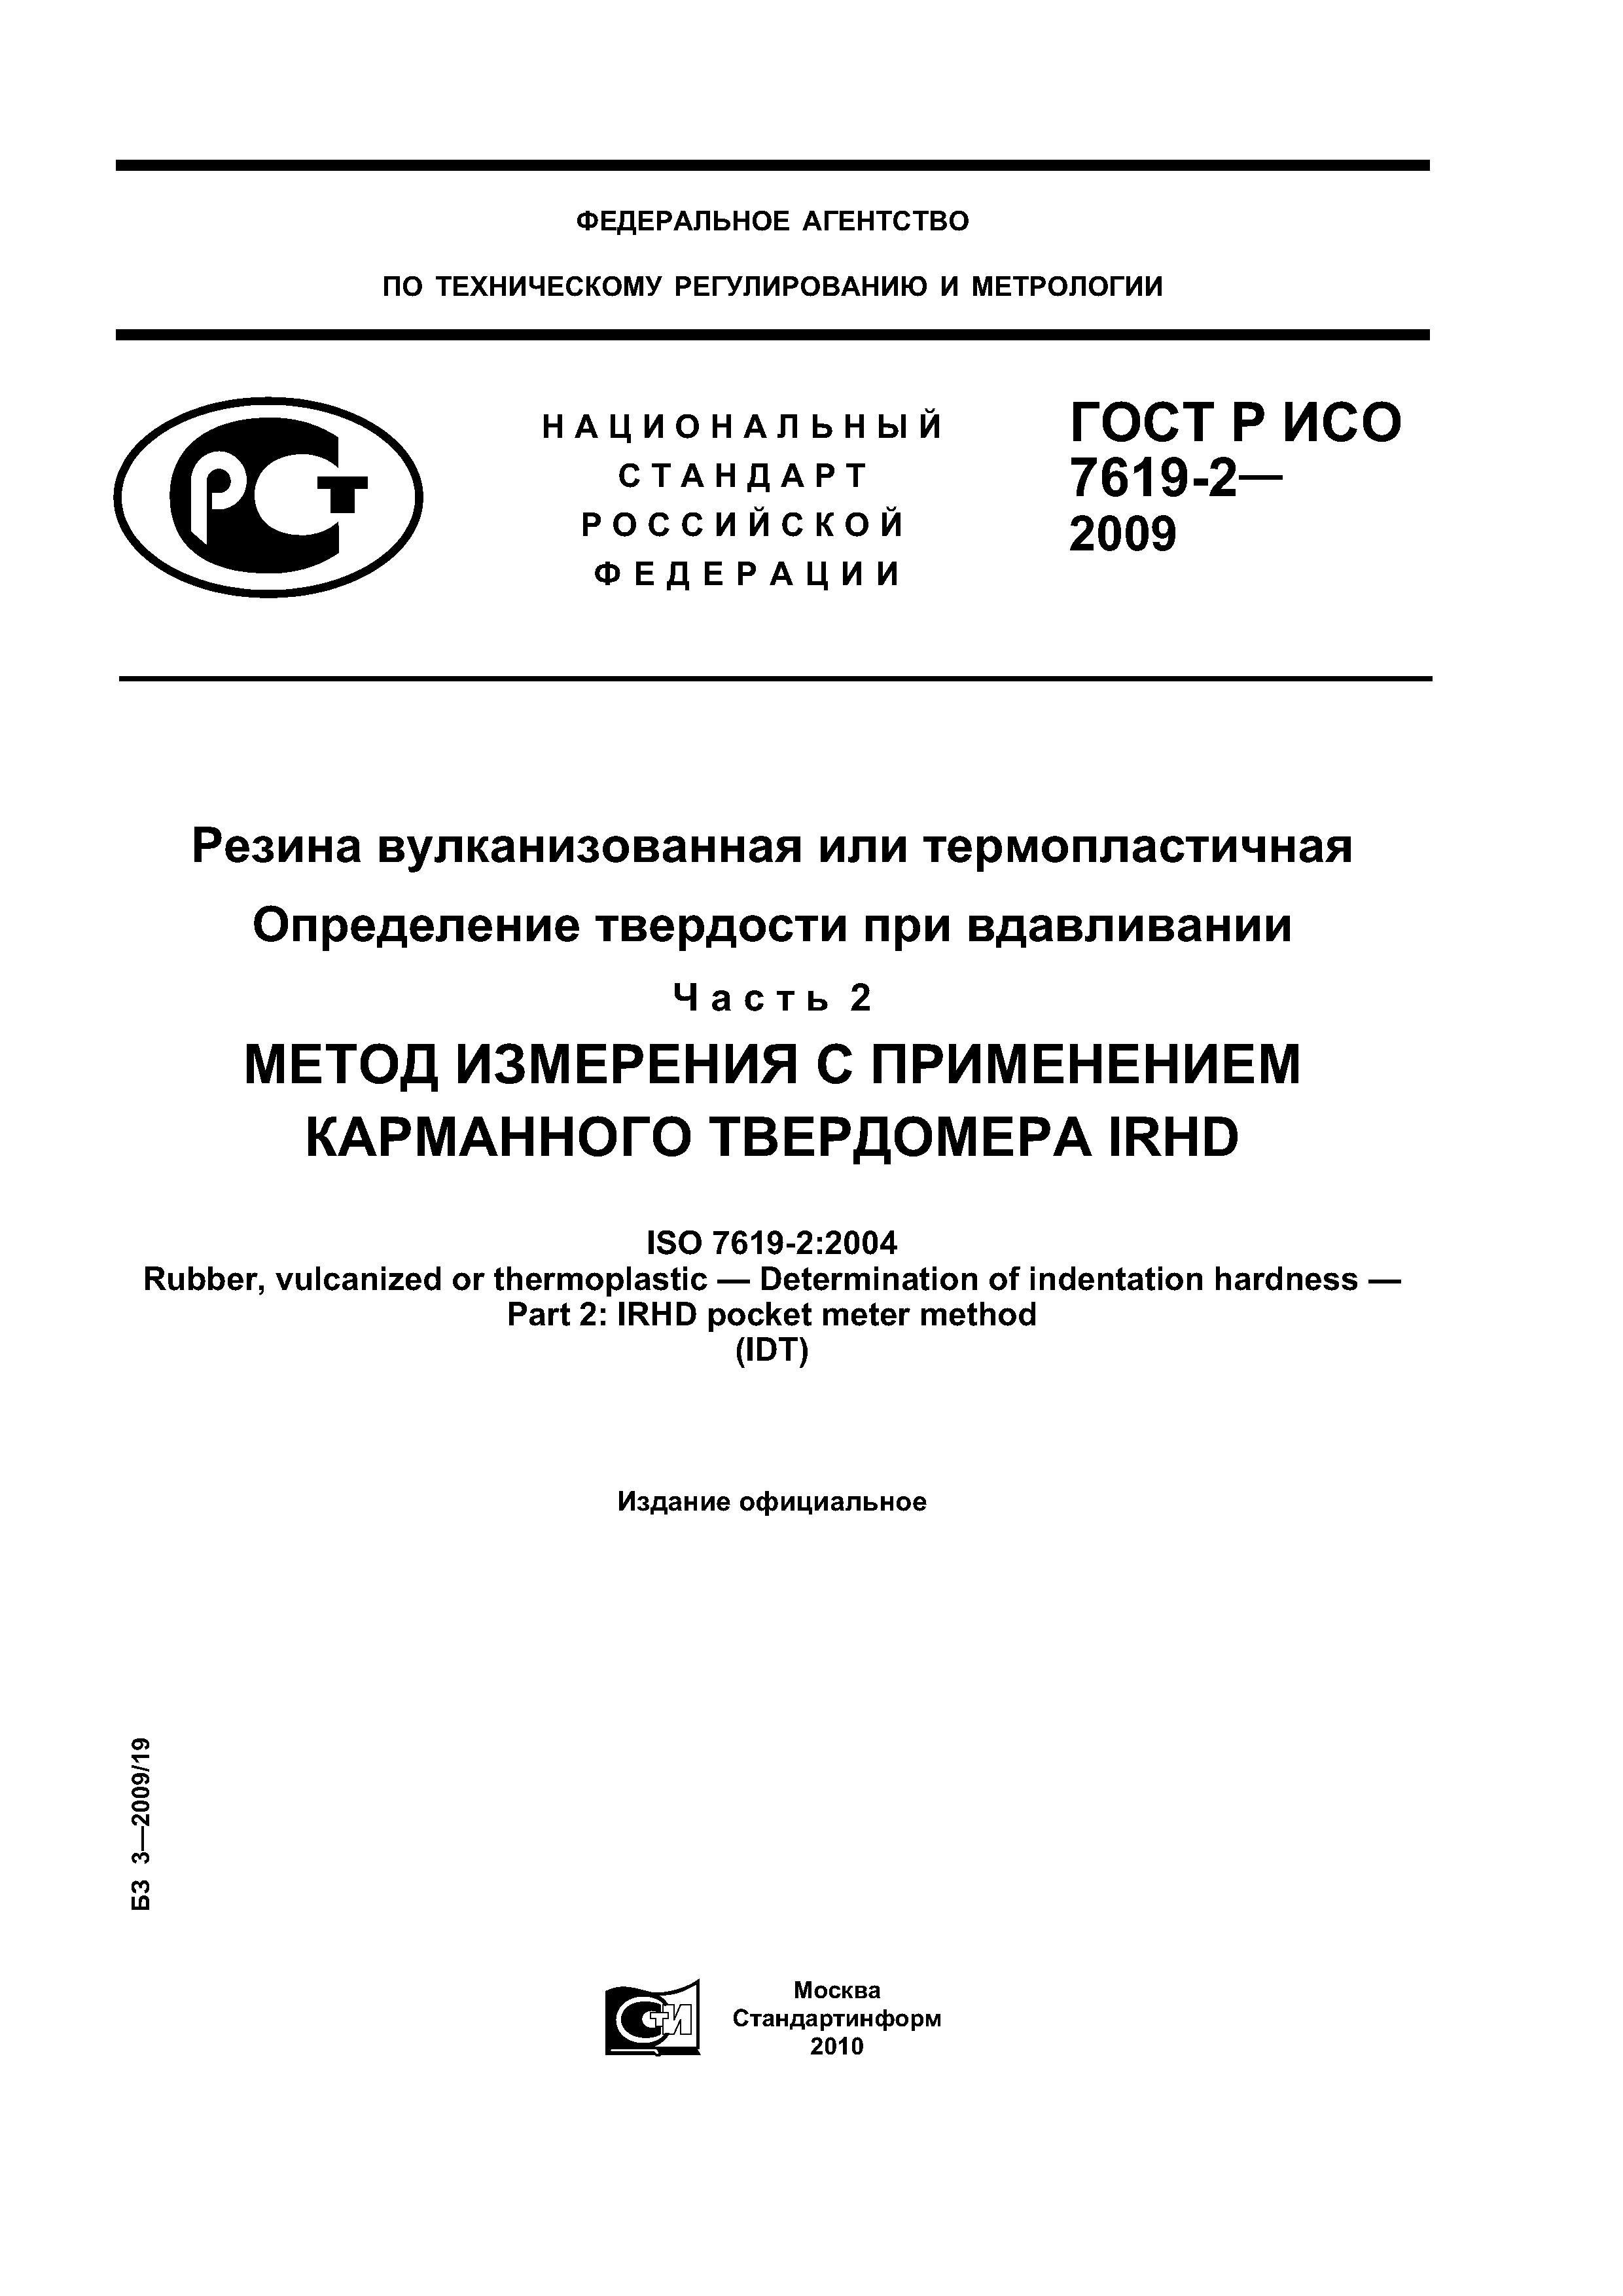 ГОСТ Р ИСО 7619-2-2009